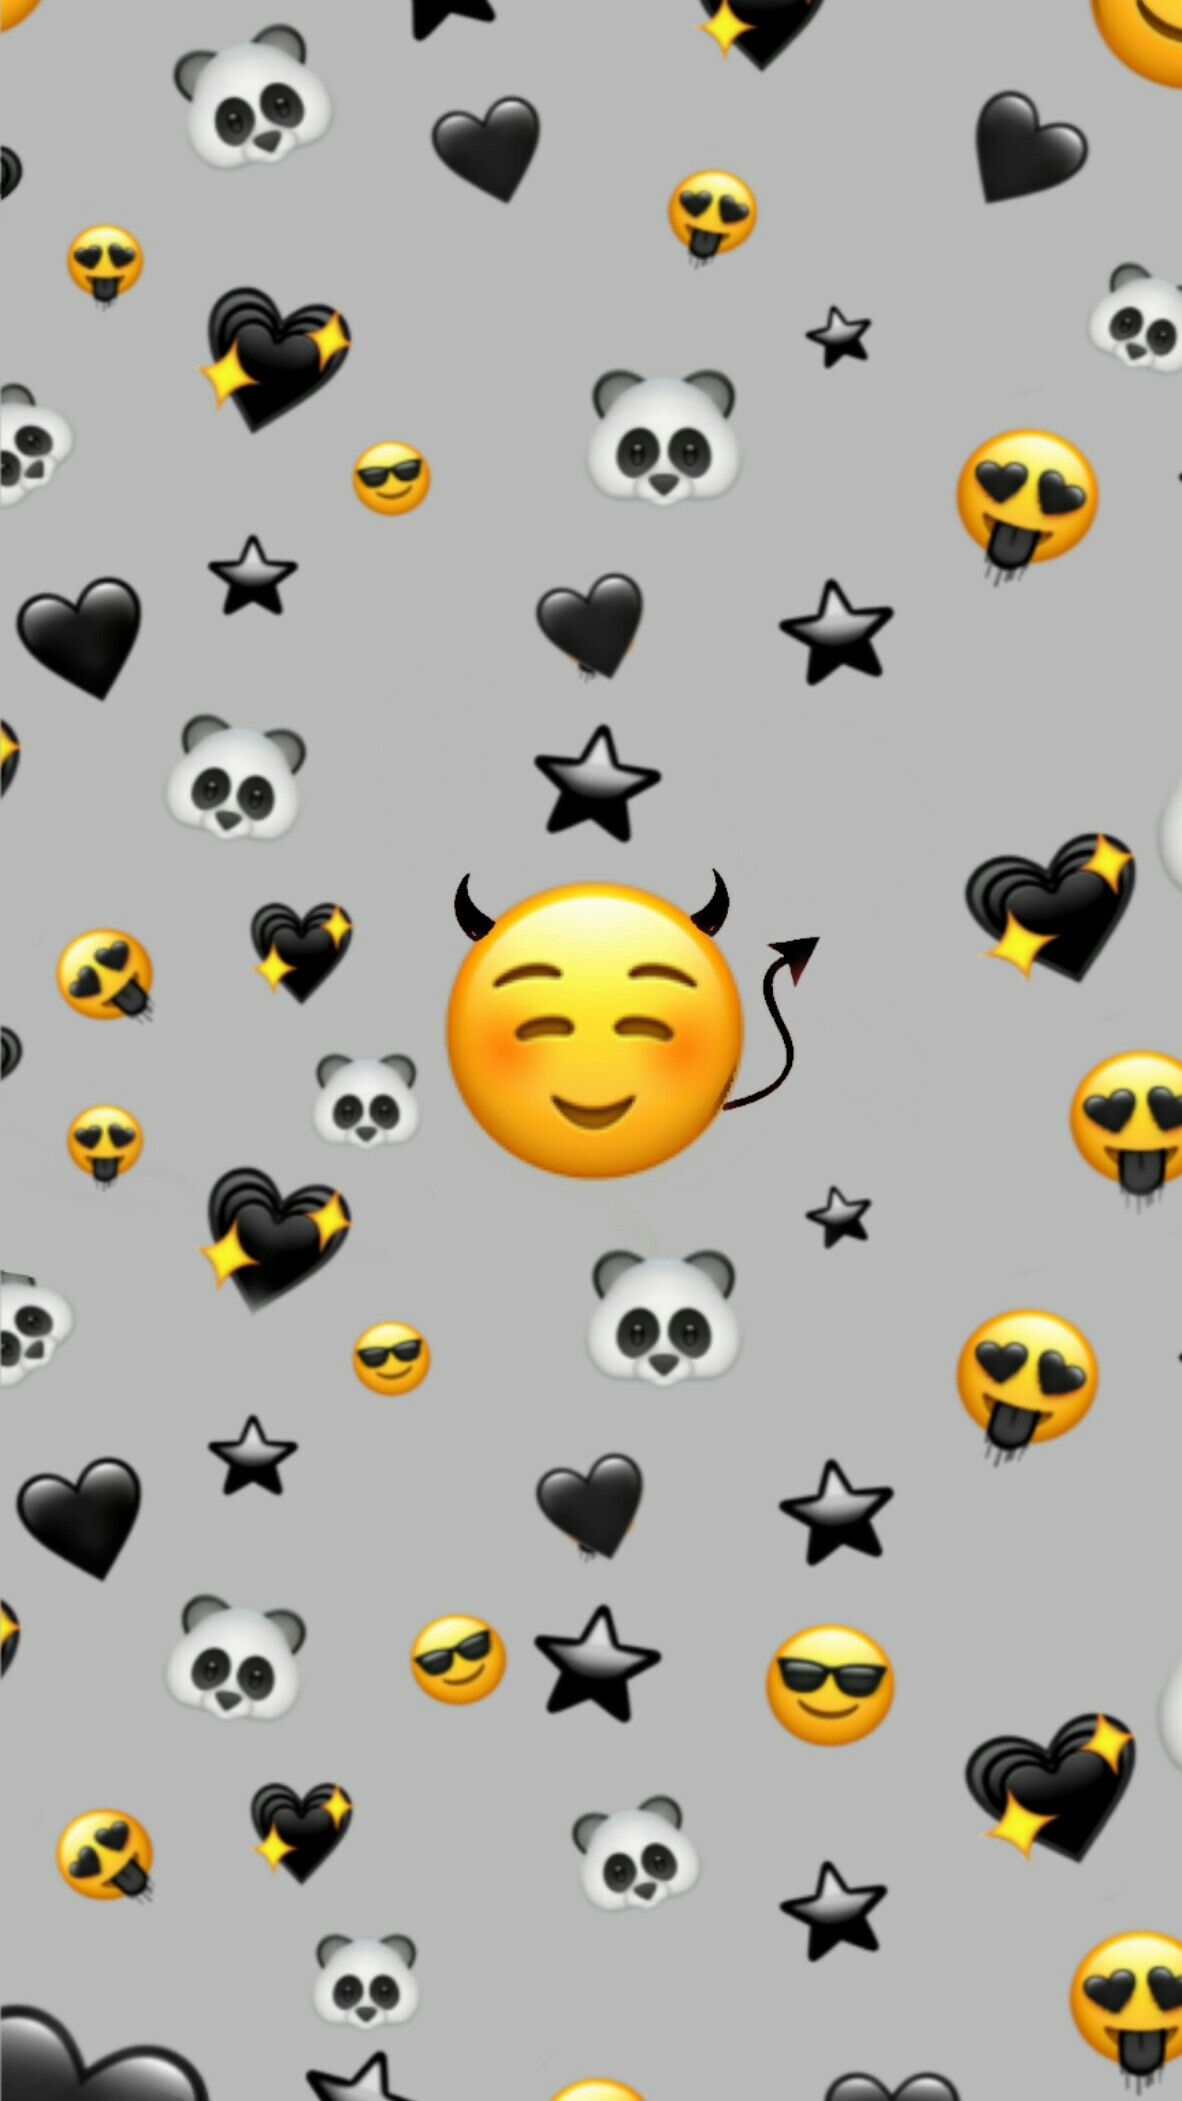 19+] Dark Emoji Wallpapers - WallpaperSafari